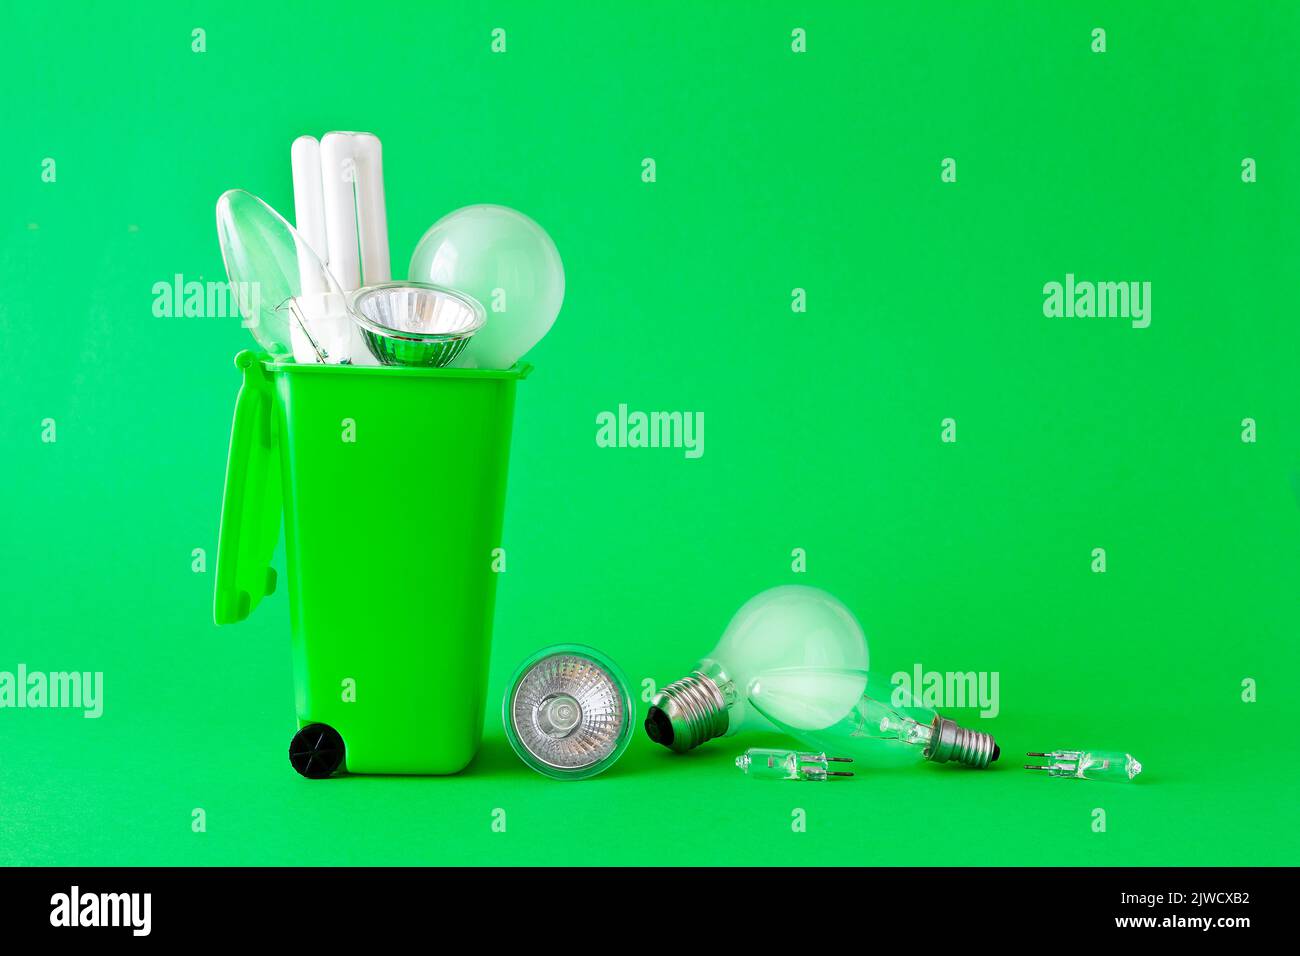 Concetto di Green Living: Diverse vecchie lampadine alogene e fluorescenti dentro e intorno a un contenitore di riciclaggio, sfondo verde, testo o spazio di copia. Foto Stock